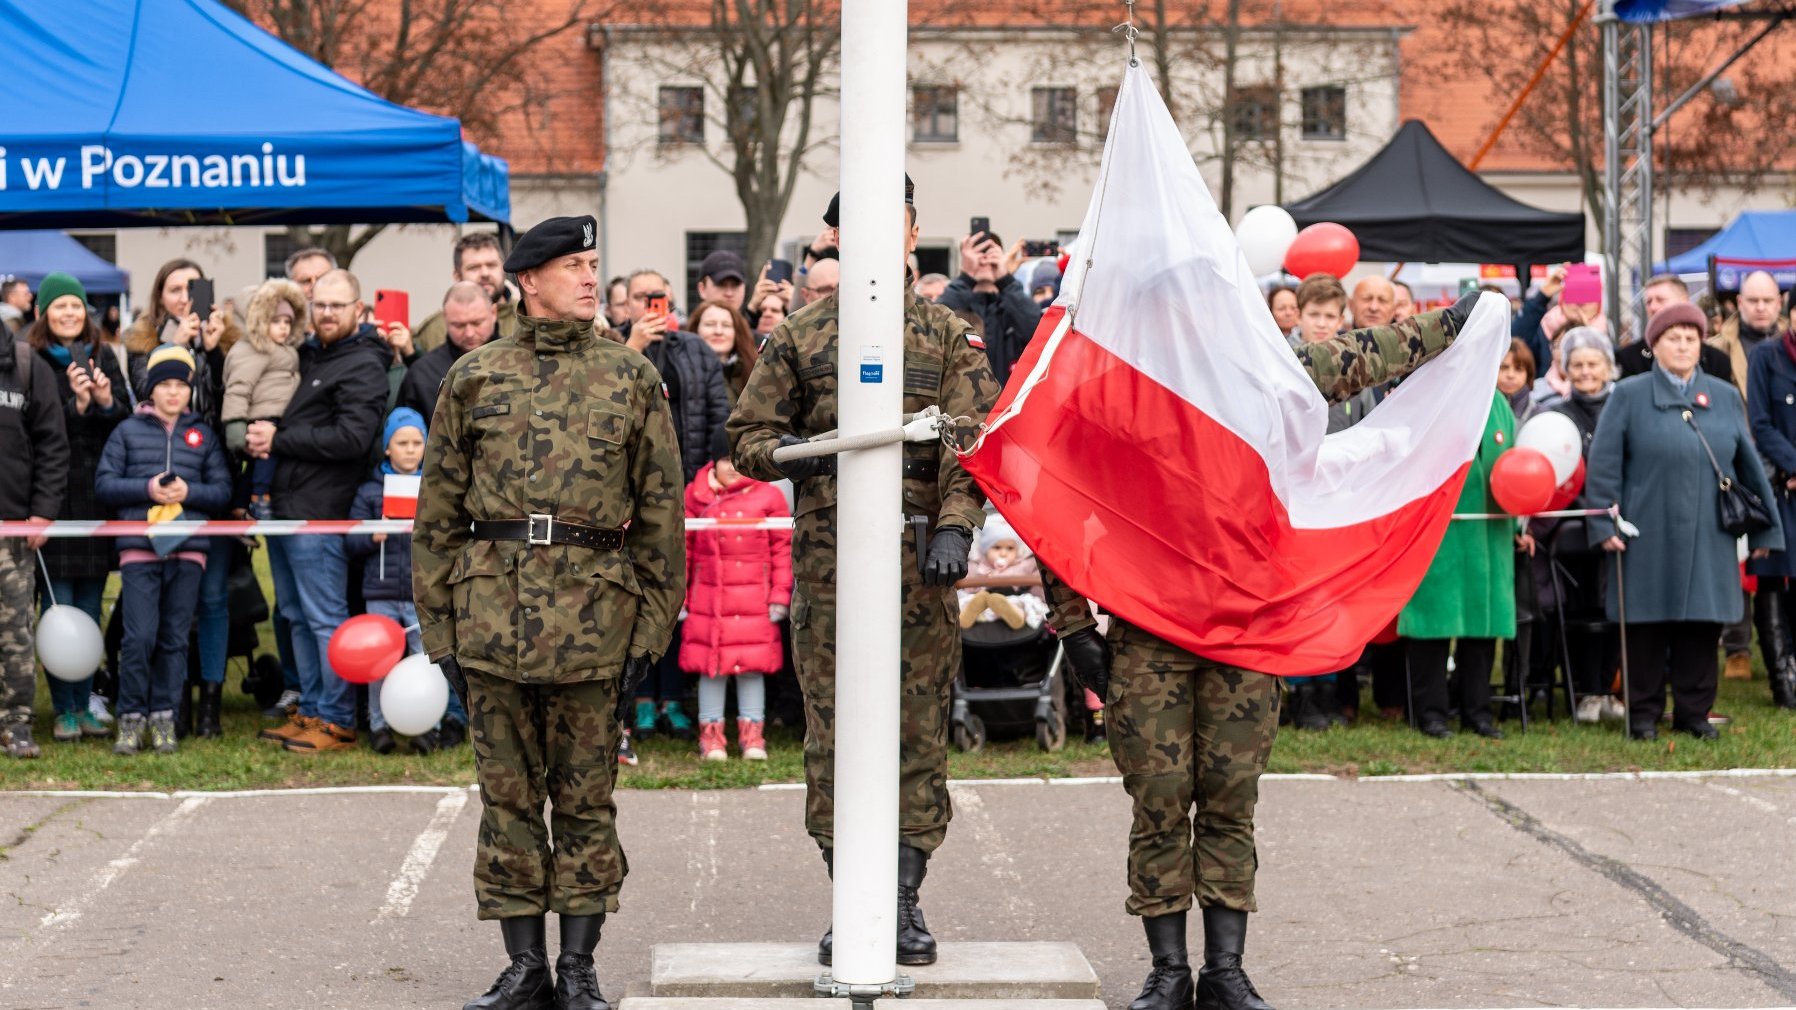 Galeria zdjęć przedstawia zeszłoroczne obchody Święta Niepodległości w Poznaniu.